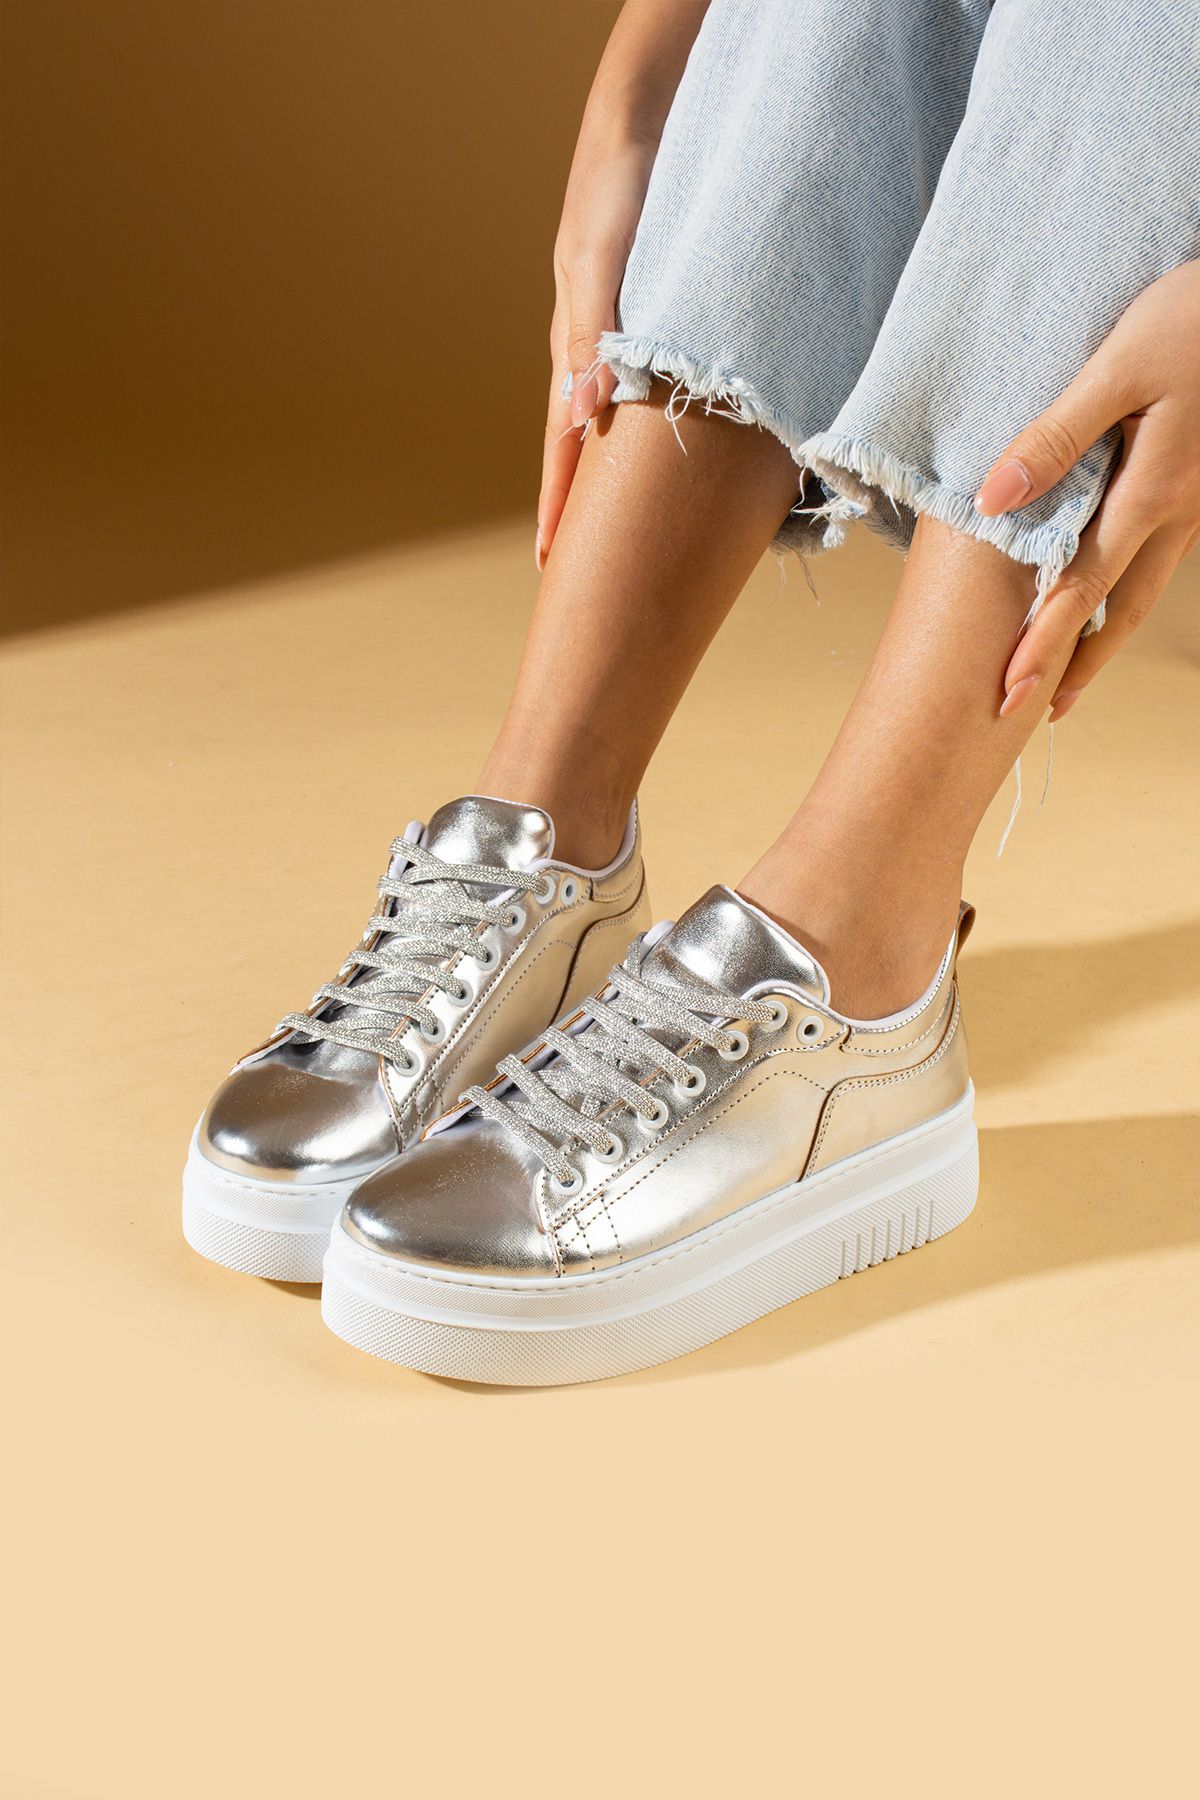 Pembe Potin Kadın Platin Gümüş Poli Rahat Taban Bağcıklı Sneaker Ayakkabı